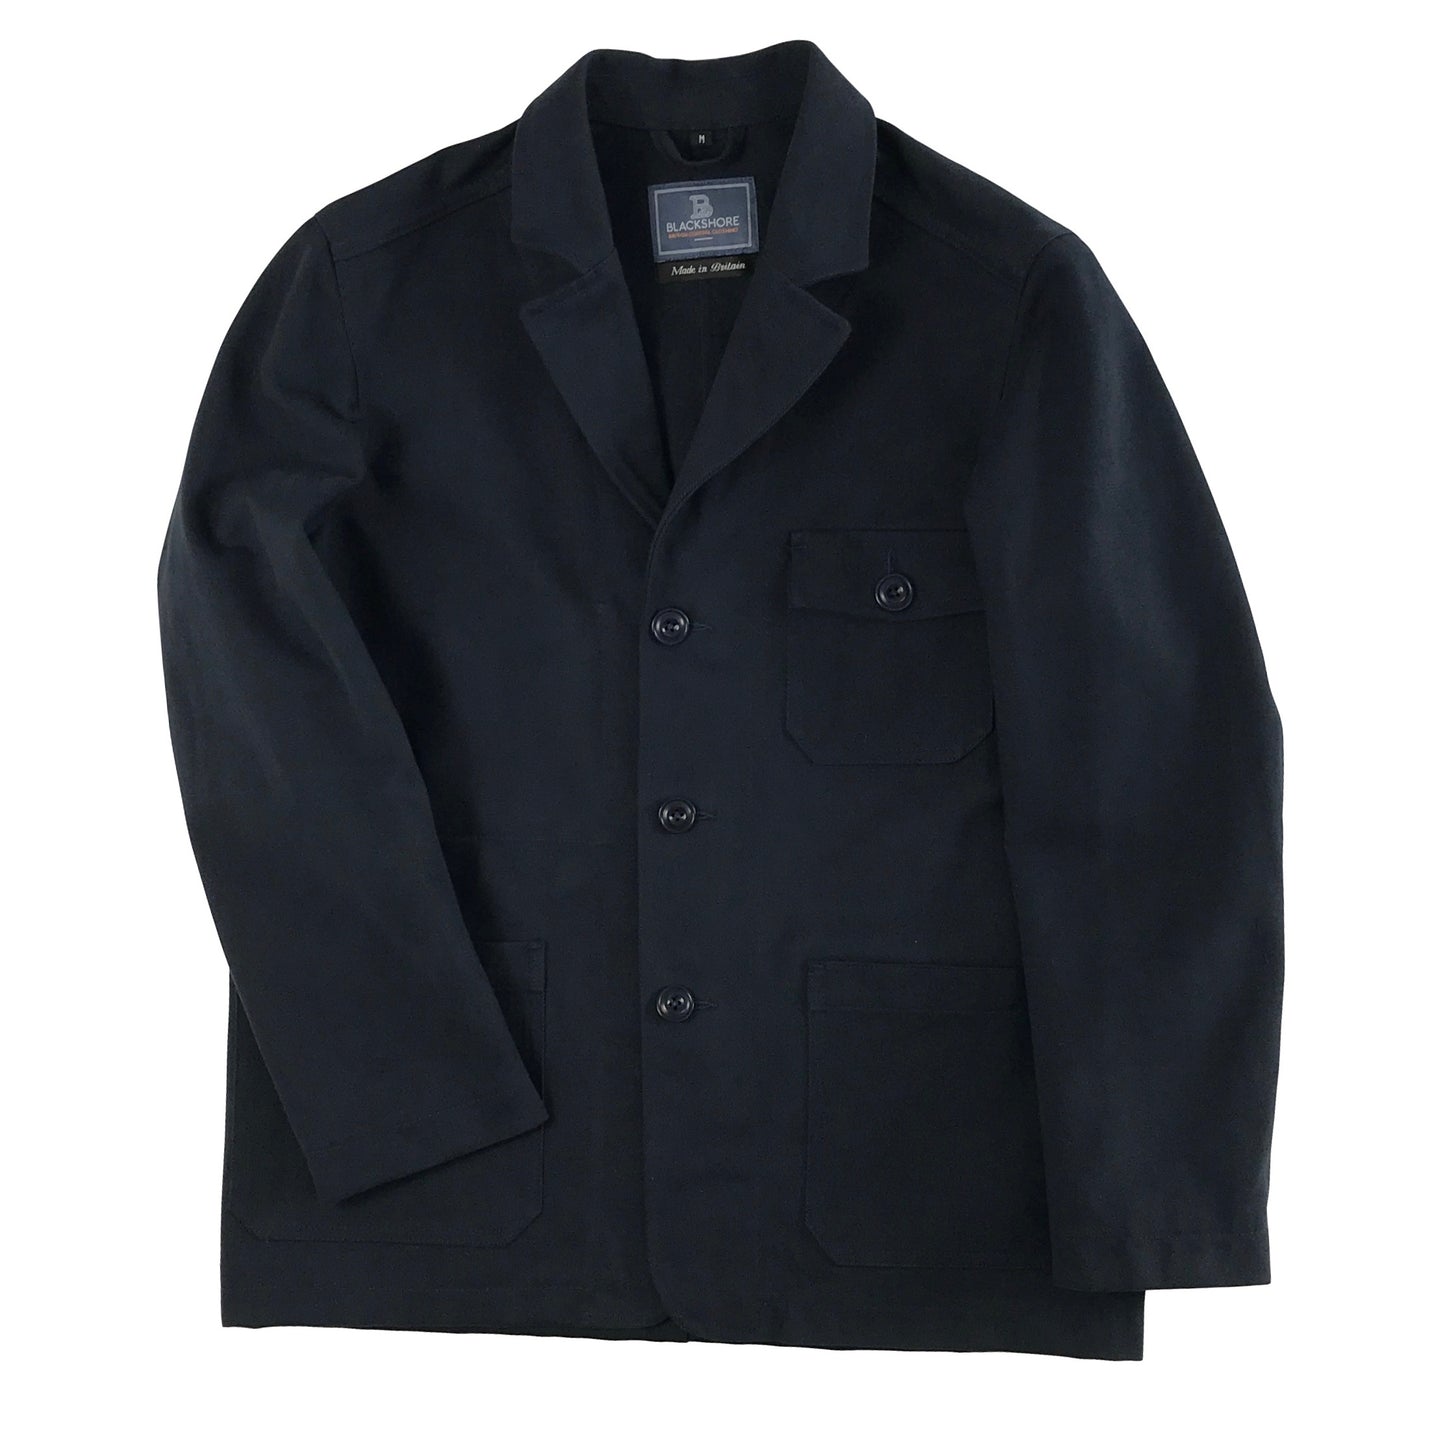 Southwold Luxury Worker Jacket